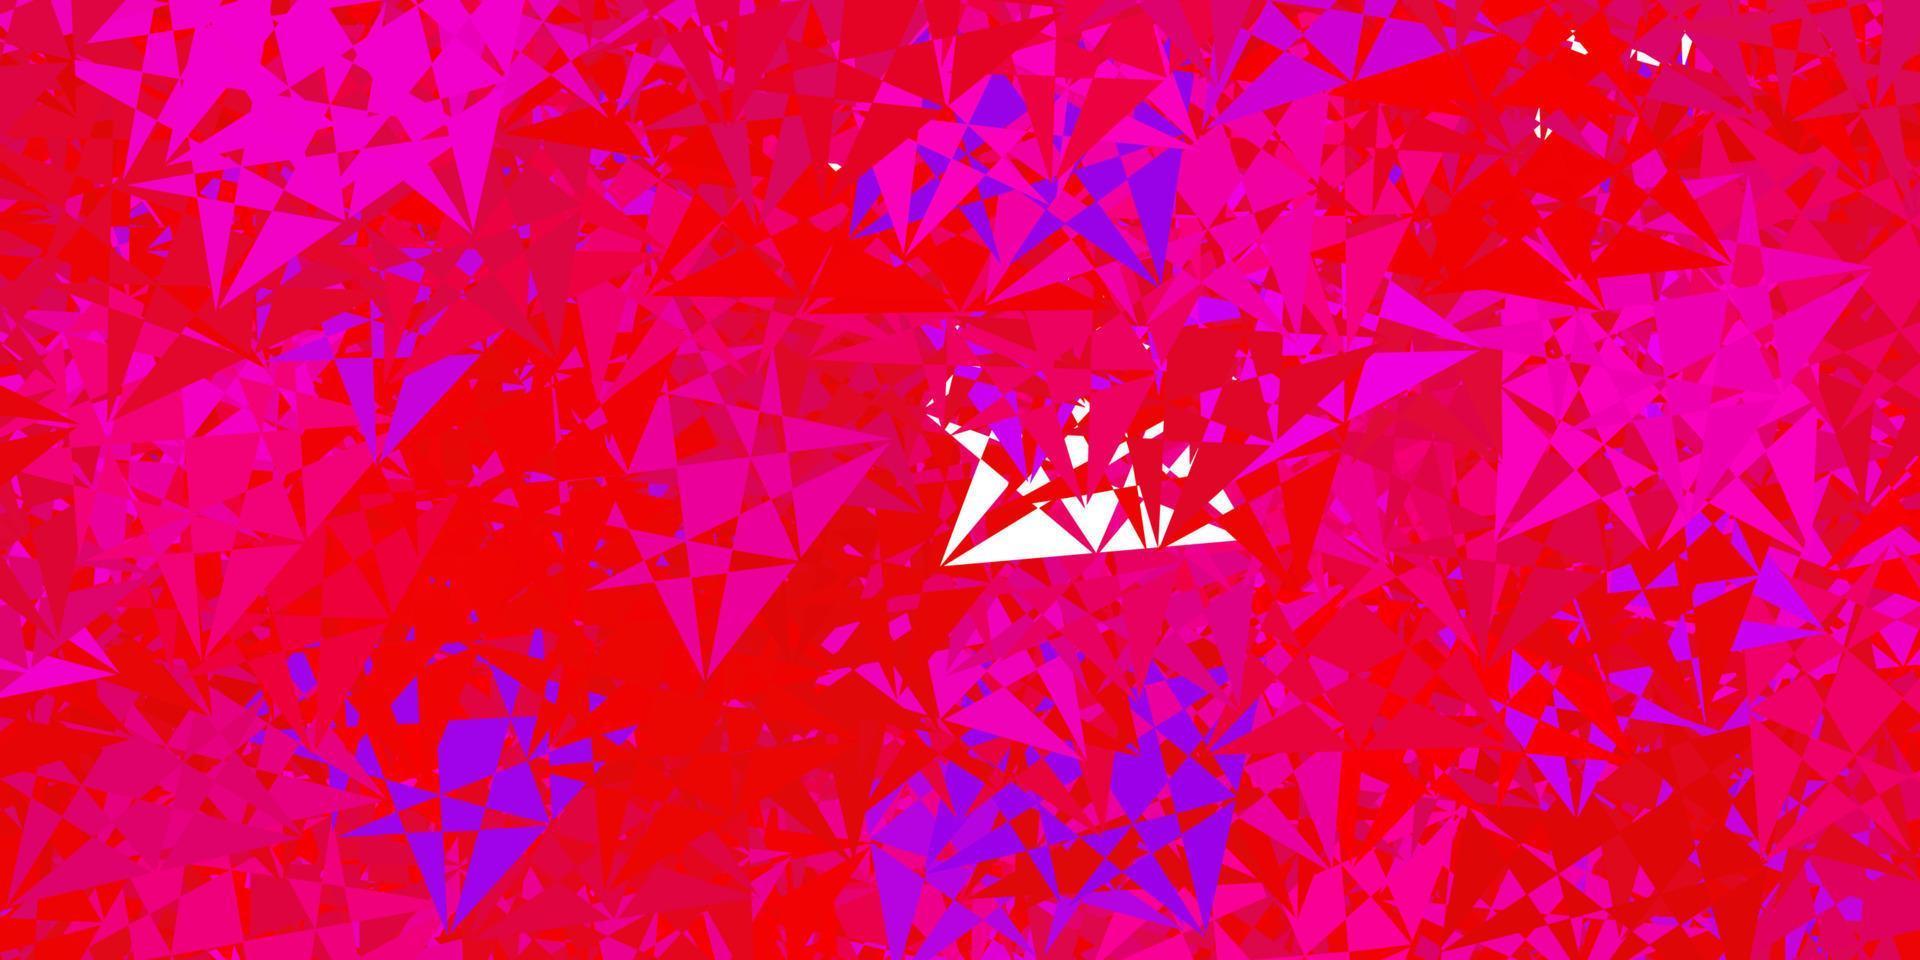 patrón de vector azul oscuro, rojo con formas poligonales.